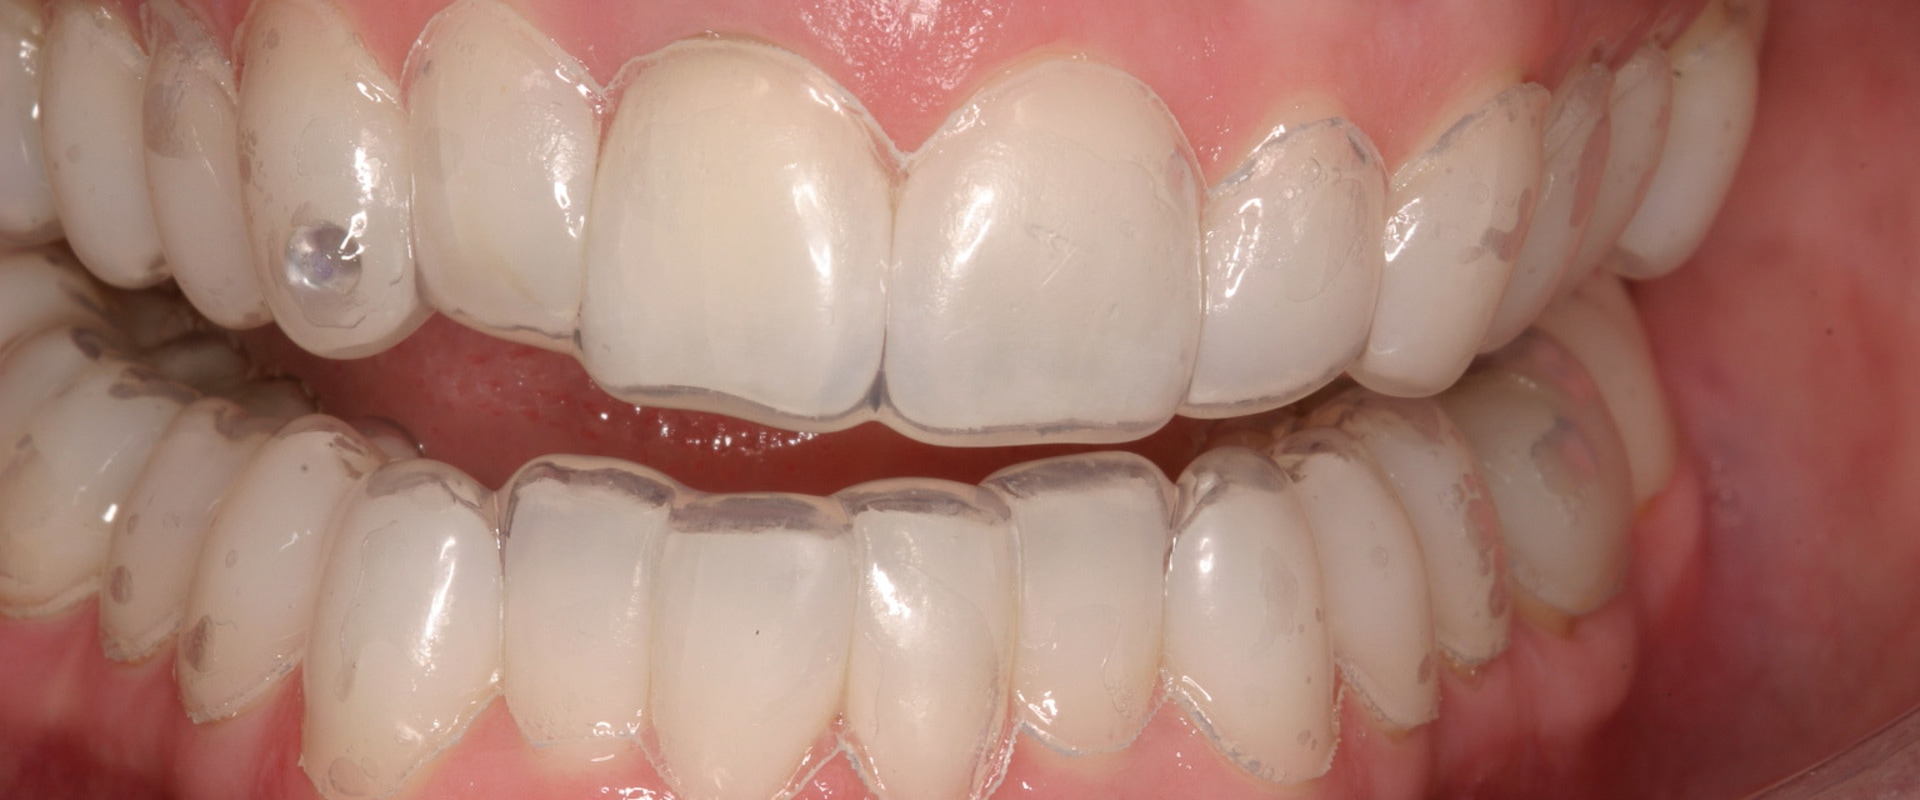 Can the dentist whiten teeth?